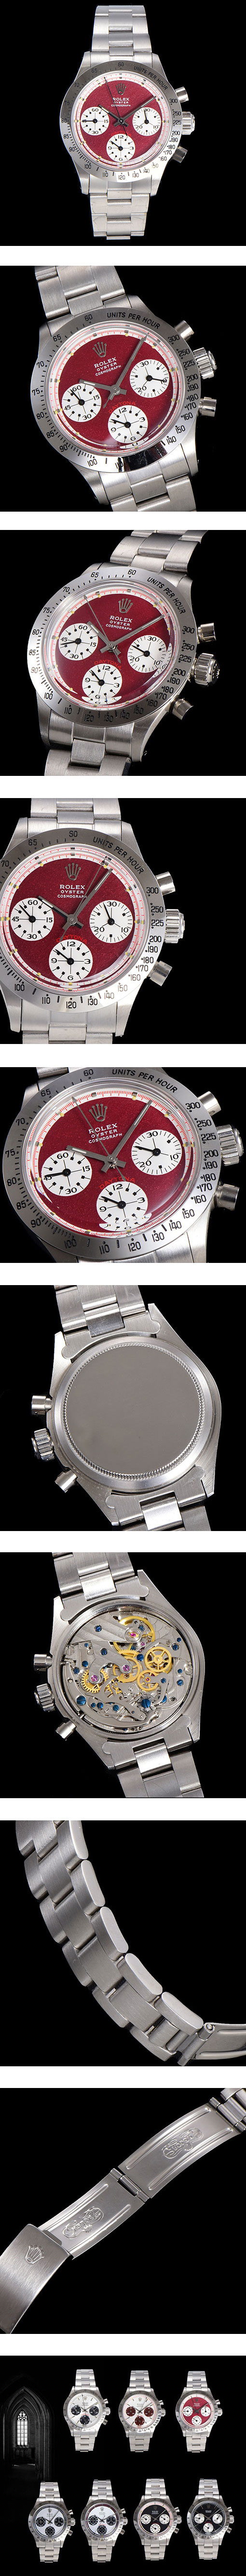 販売促進中 ROLEX ロレックスコピー時計 デイトナ 6239 ,37mm ヴィンテージ レッド Cal.727手巻き 3連ジュビリー クロノグラフ